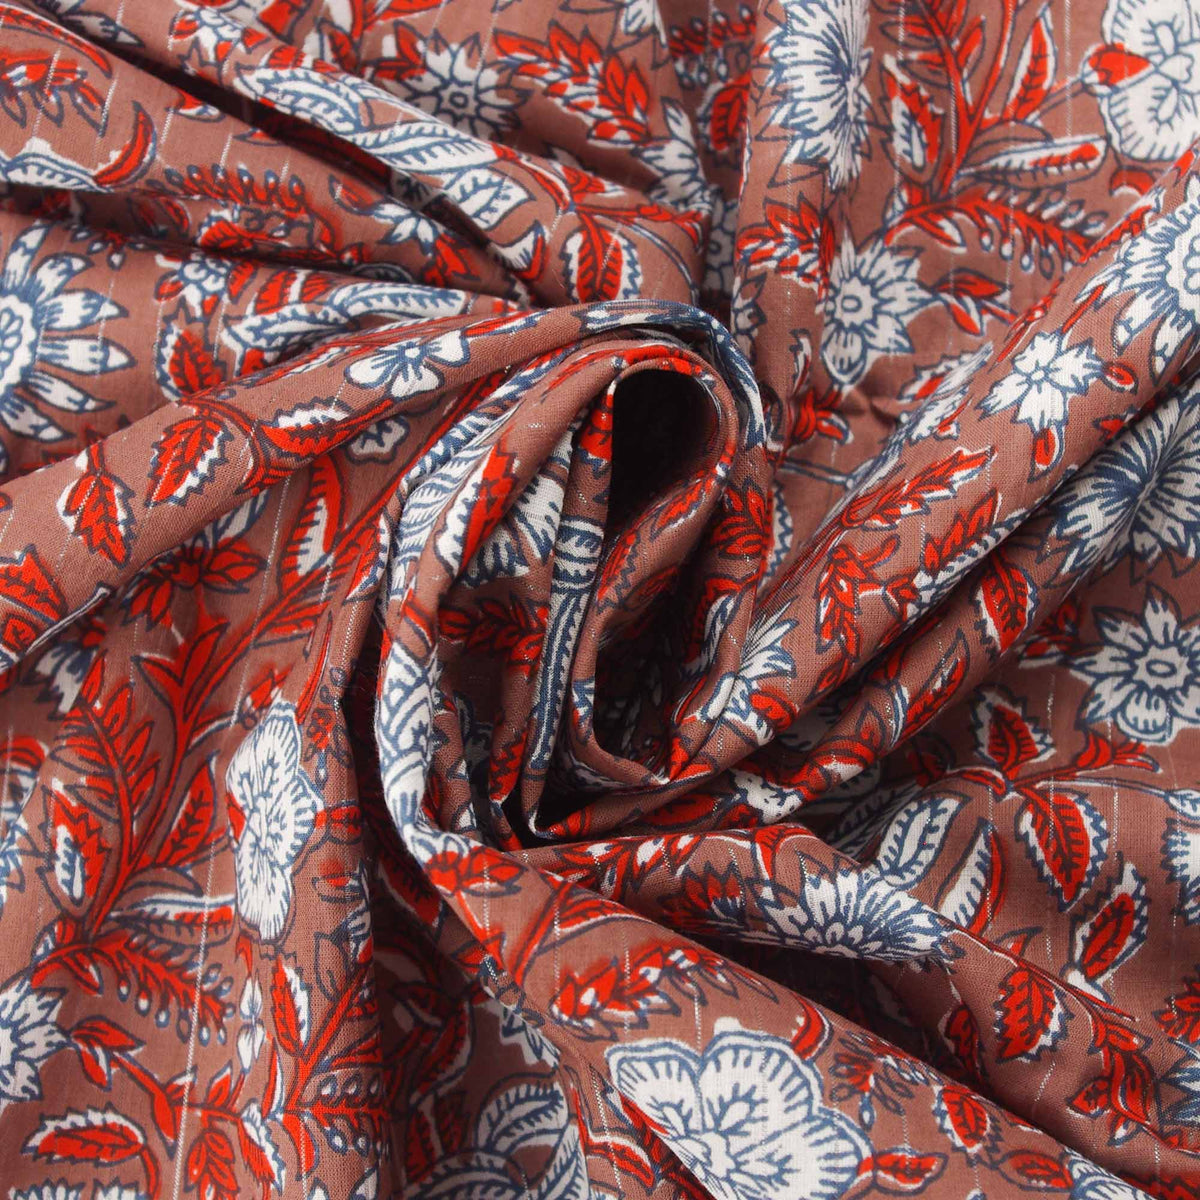 Handsiebbedruckter Stoff aus 100 % Baumwolle – rote Reben auf Braun mit silbernen Linien (Design 385)